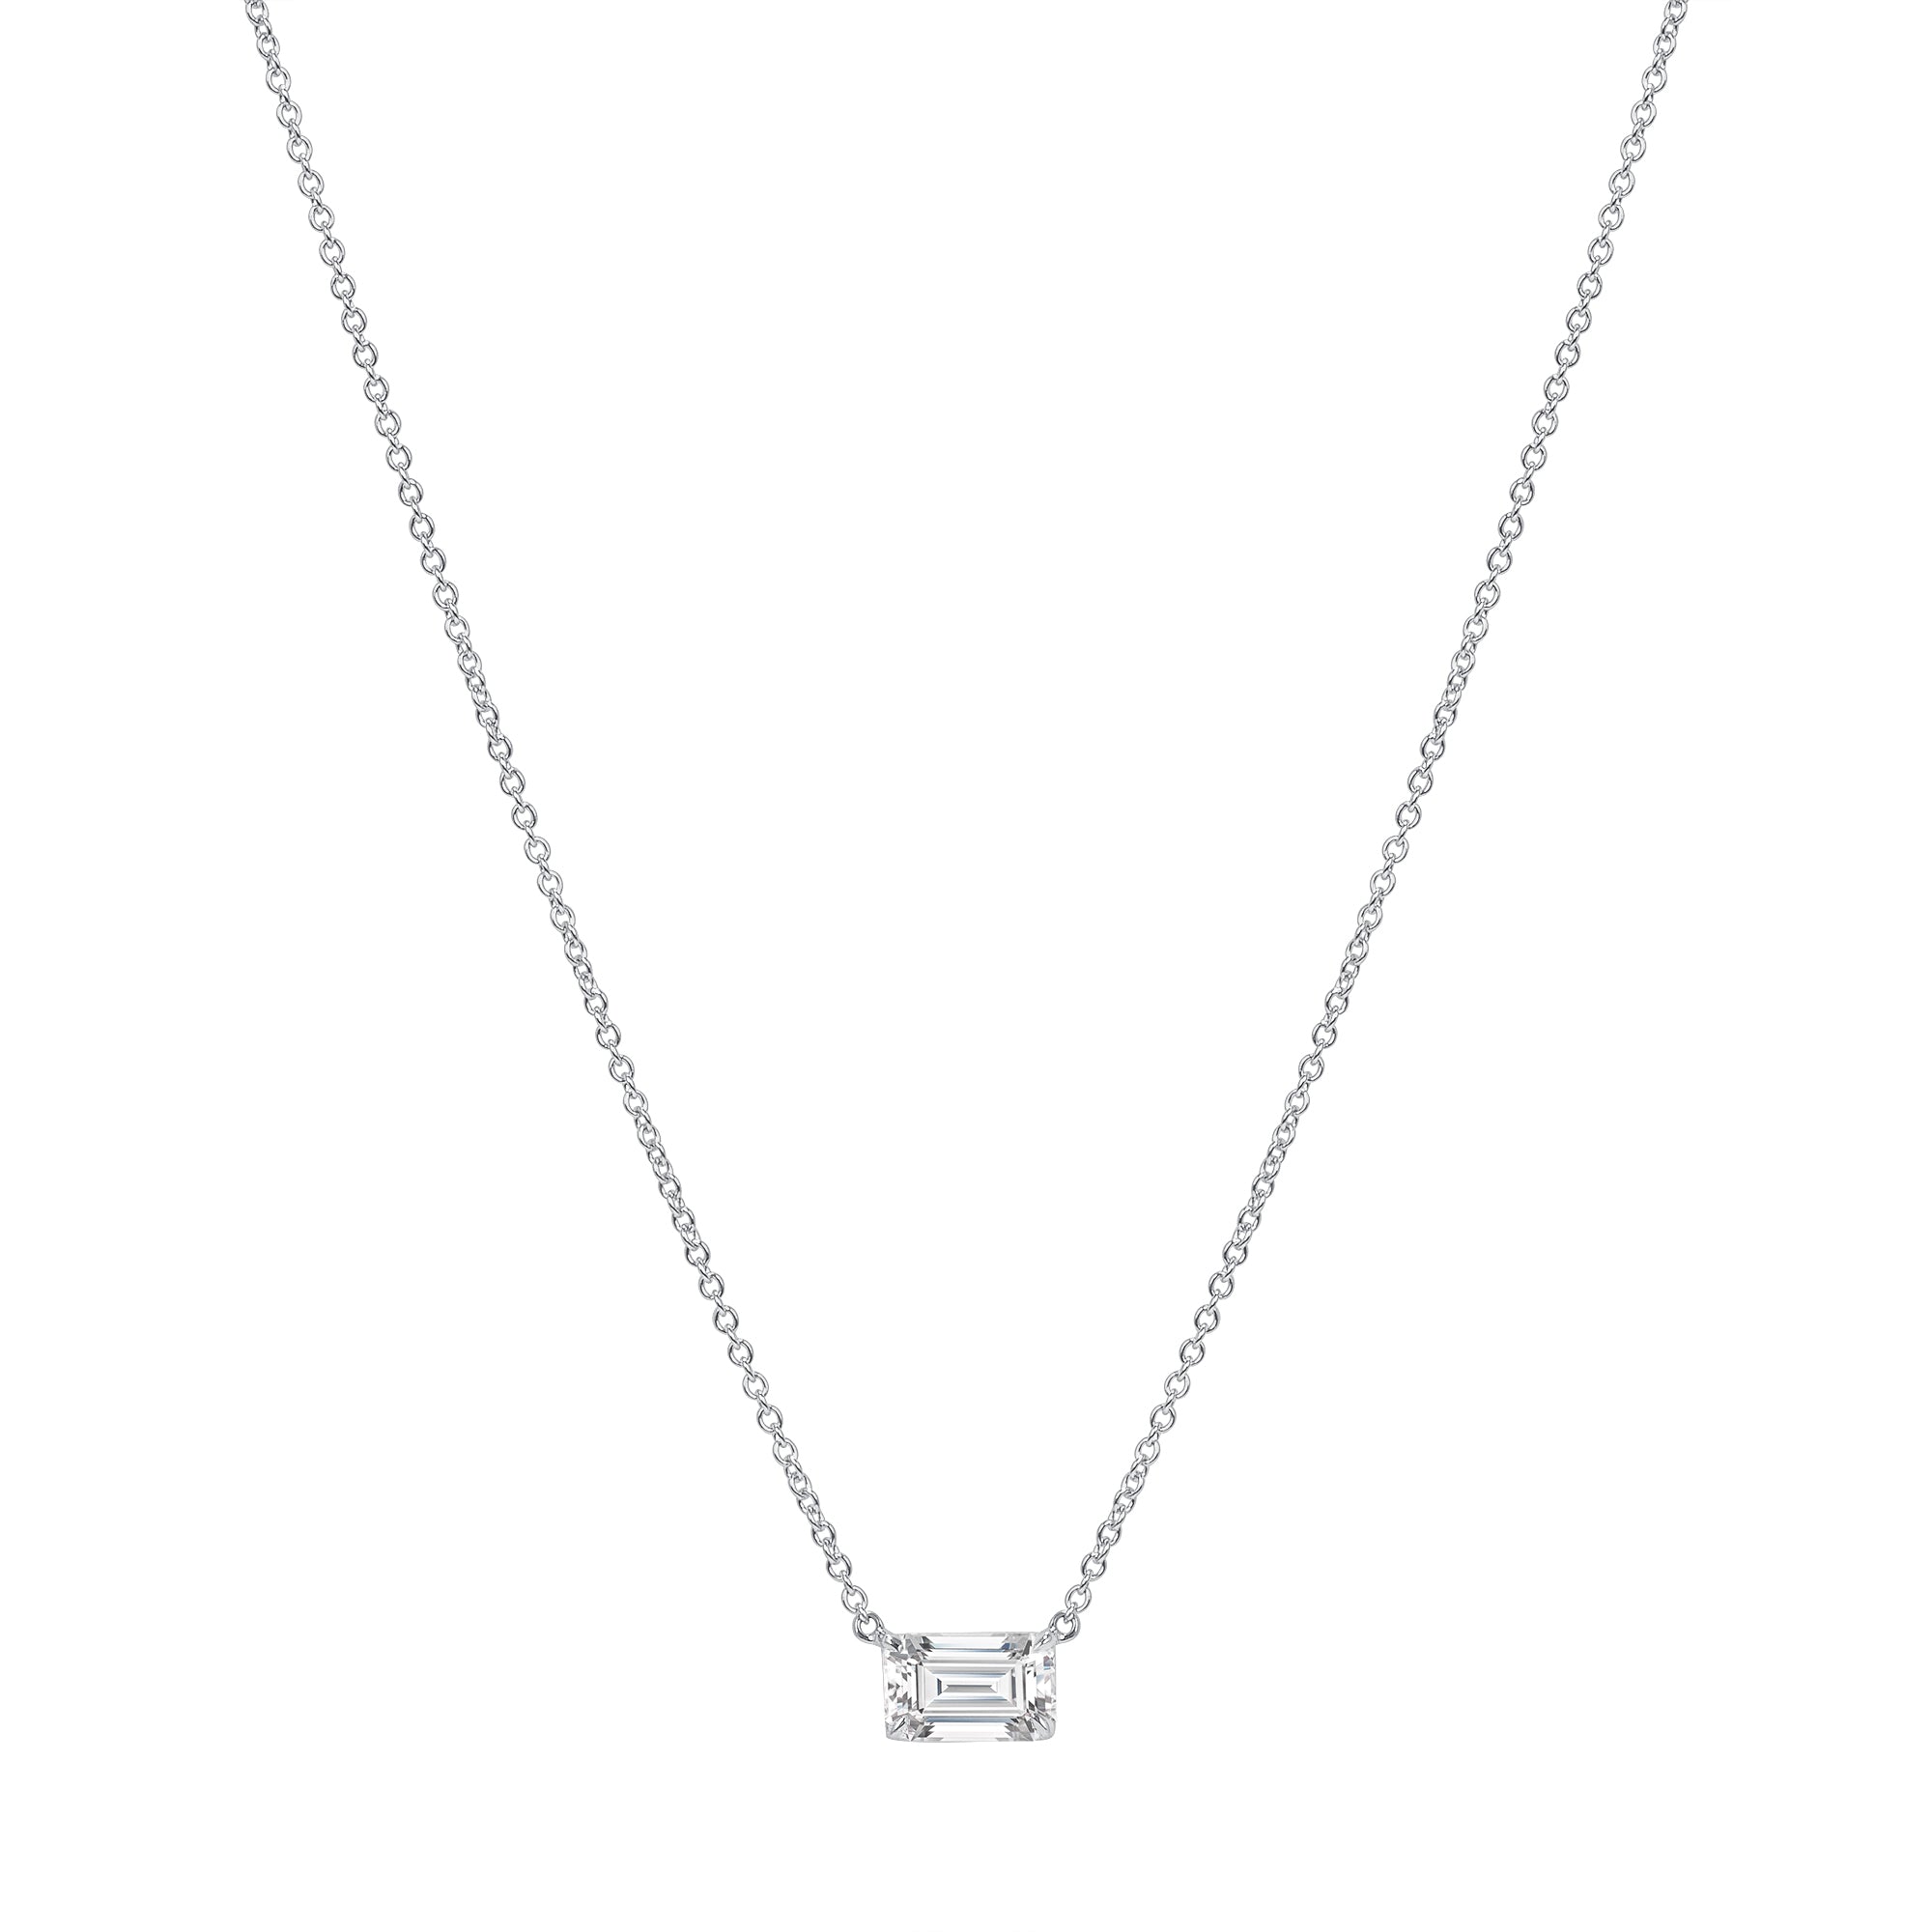 1.01ct. Emerald Cut Center Stone Diamond Pendant Necklace in 18K White Gold